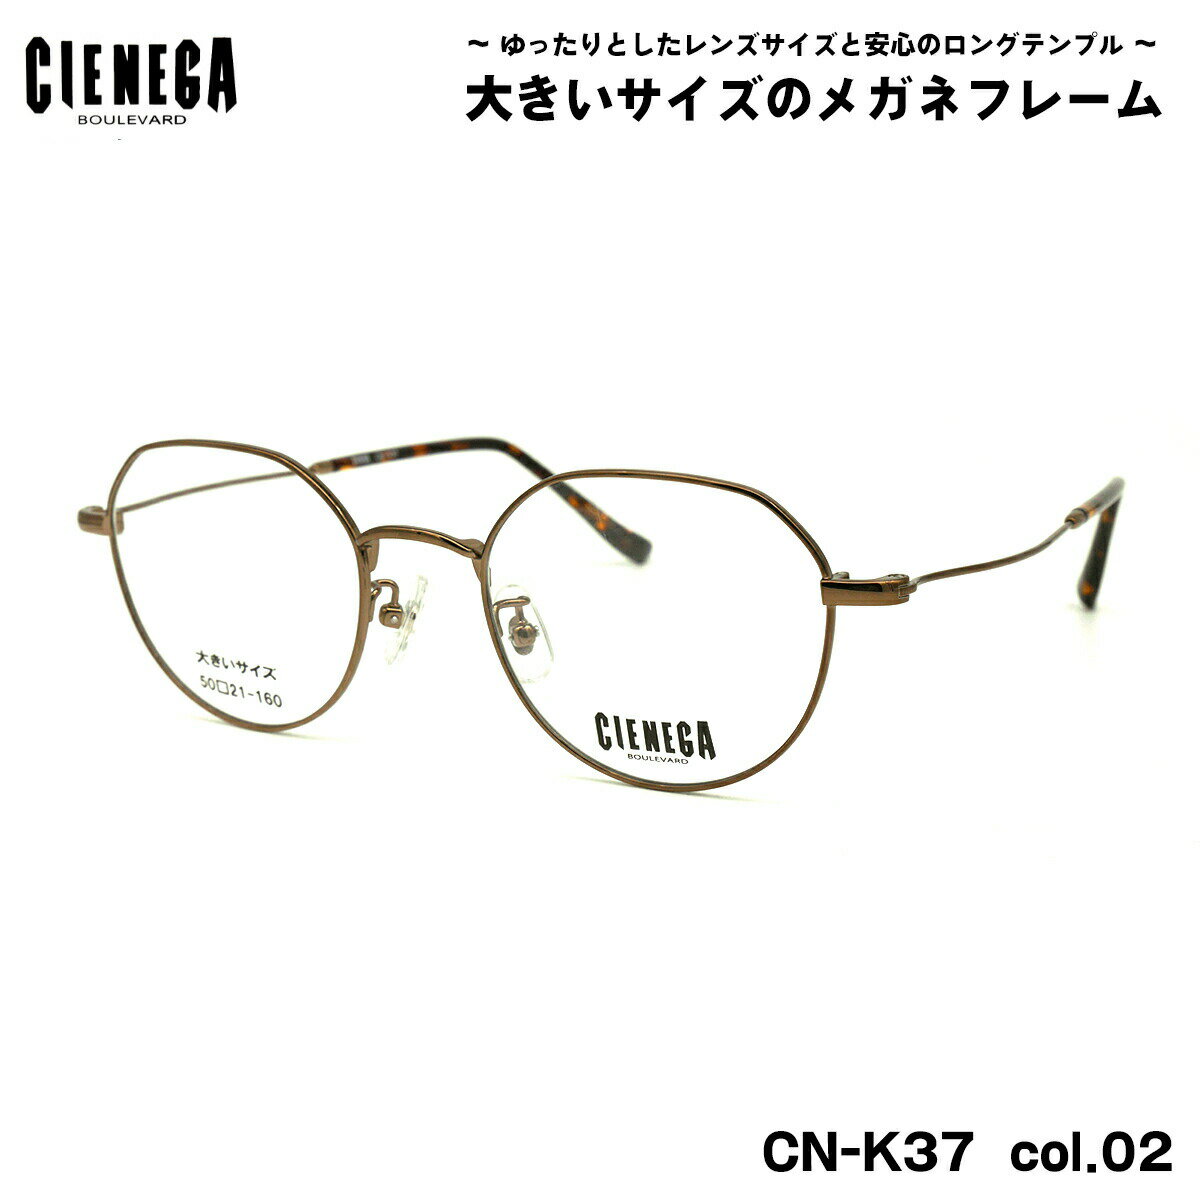 大きいサイズ メガネ CN-K37 col.02 50mm CIENEGA シェネガ BIGサイズ 大きい顔 大柄 フレーム